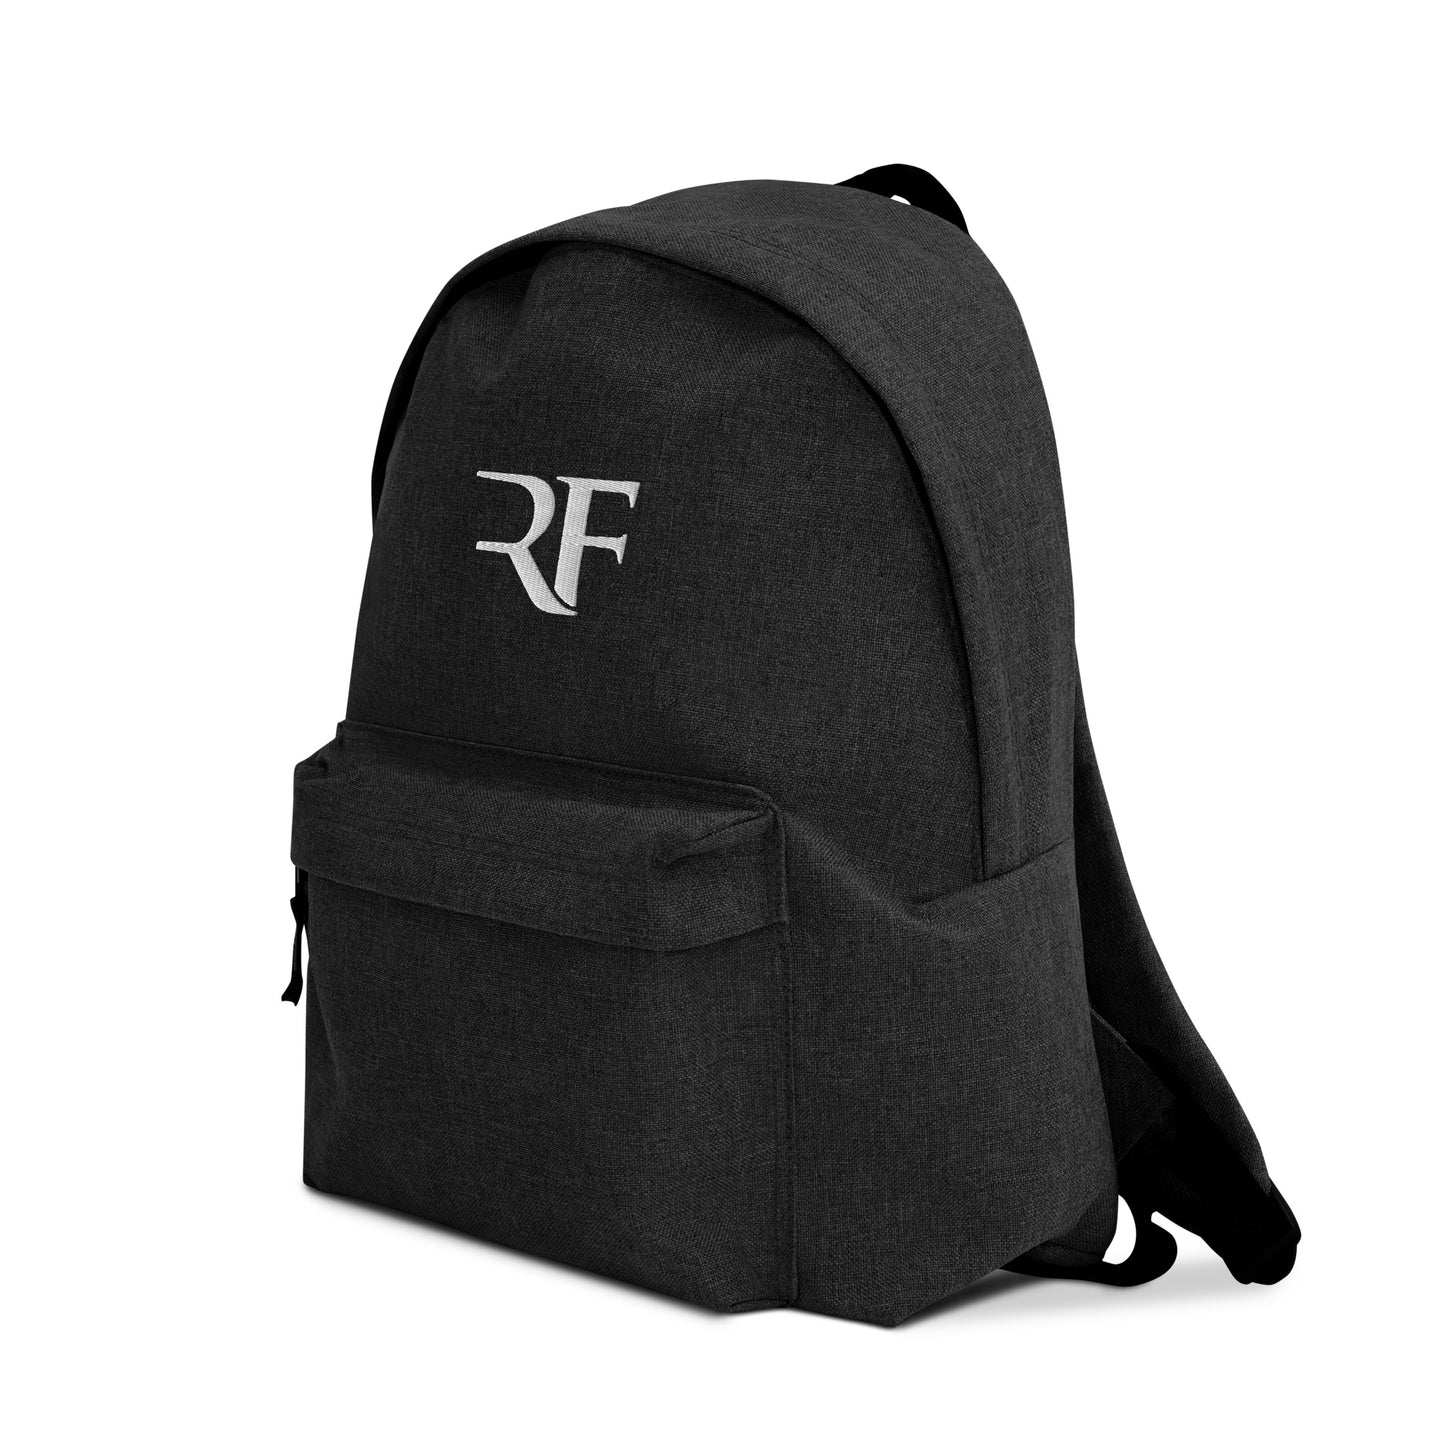 RF Backpack